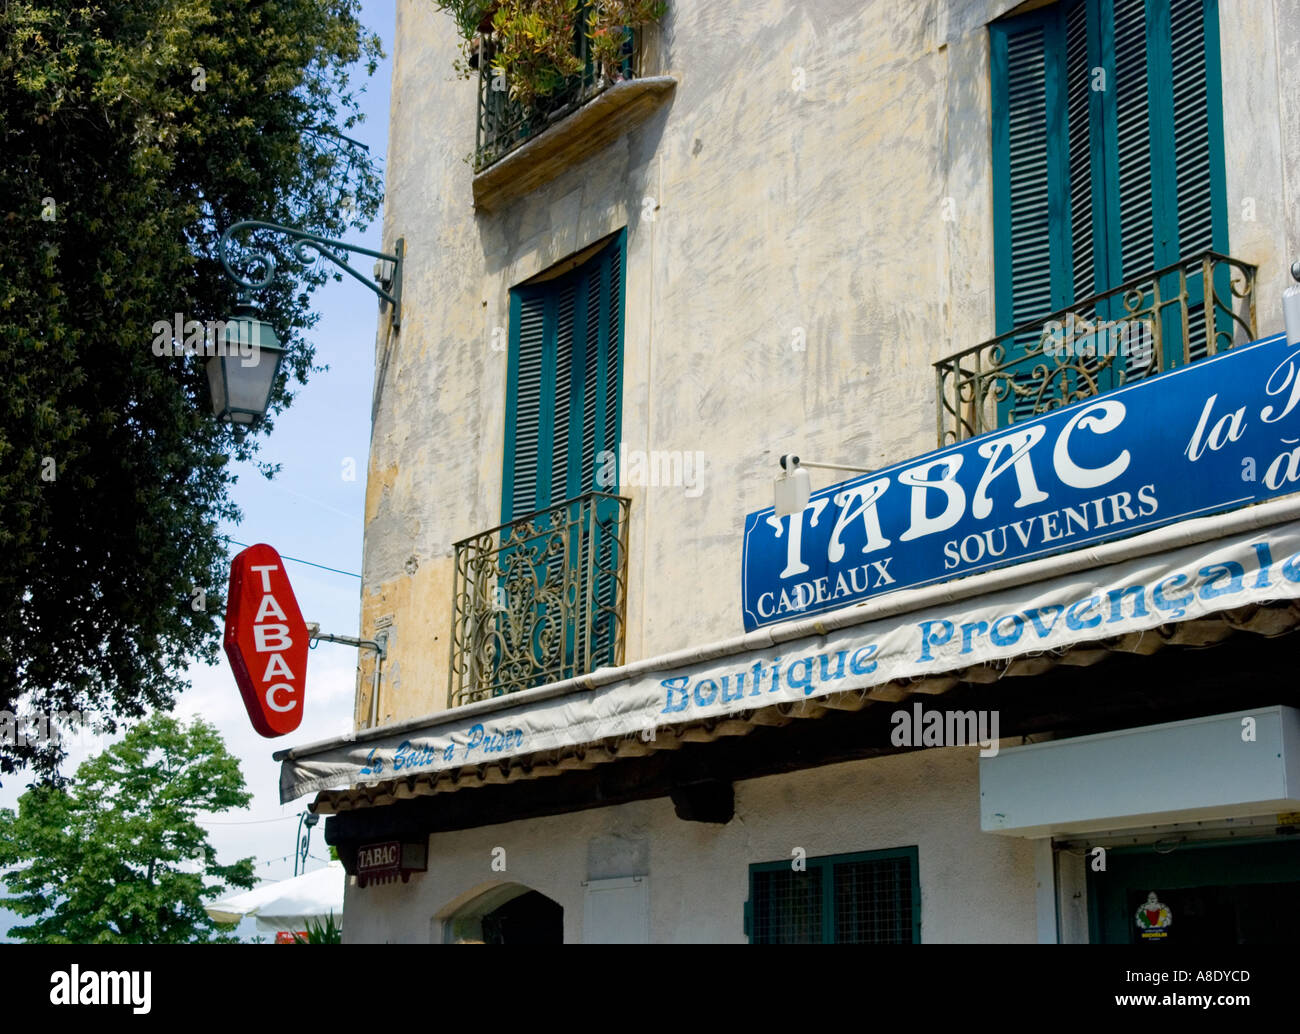 Das typische Tabac-Zeichen, die zeigt, wo Sie Tabakwaren in Frankreich kaufen können Stockfoto